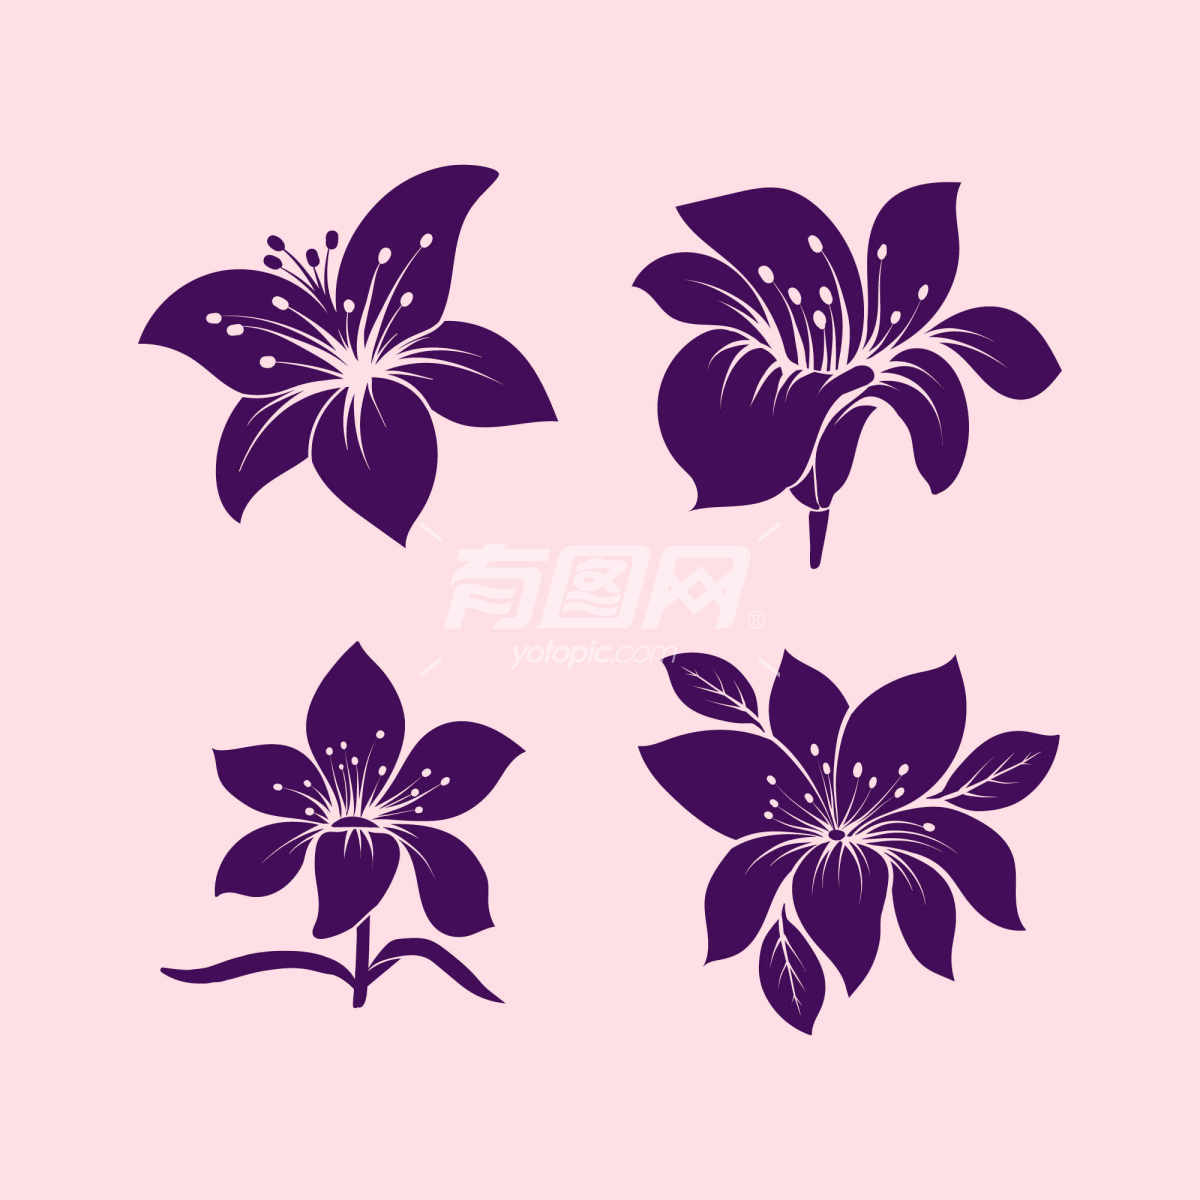 四朵紫色的花朵